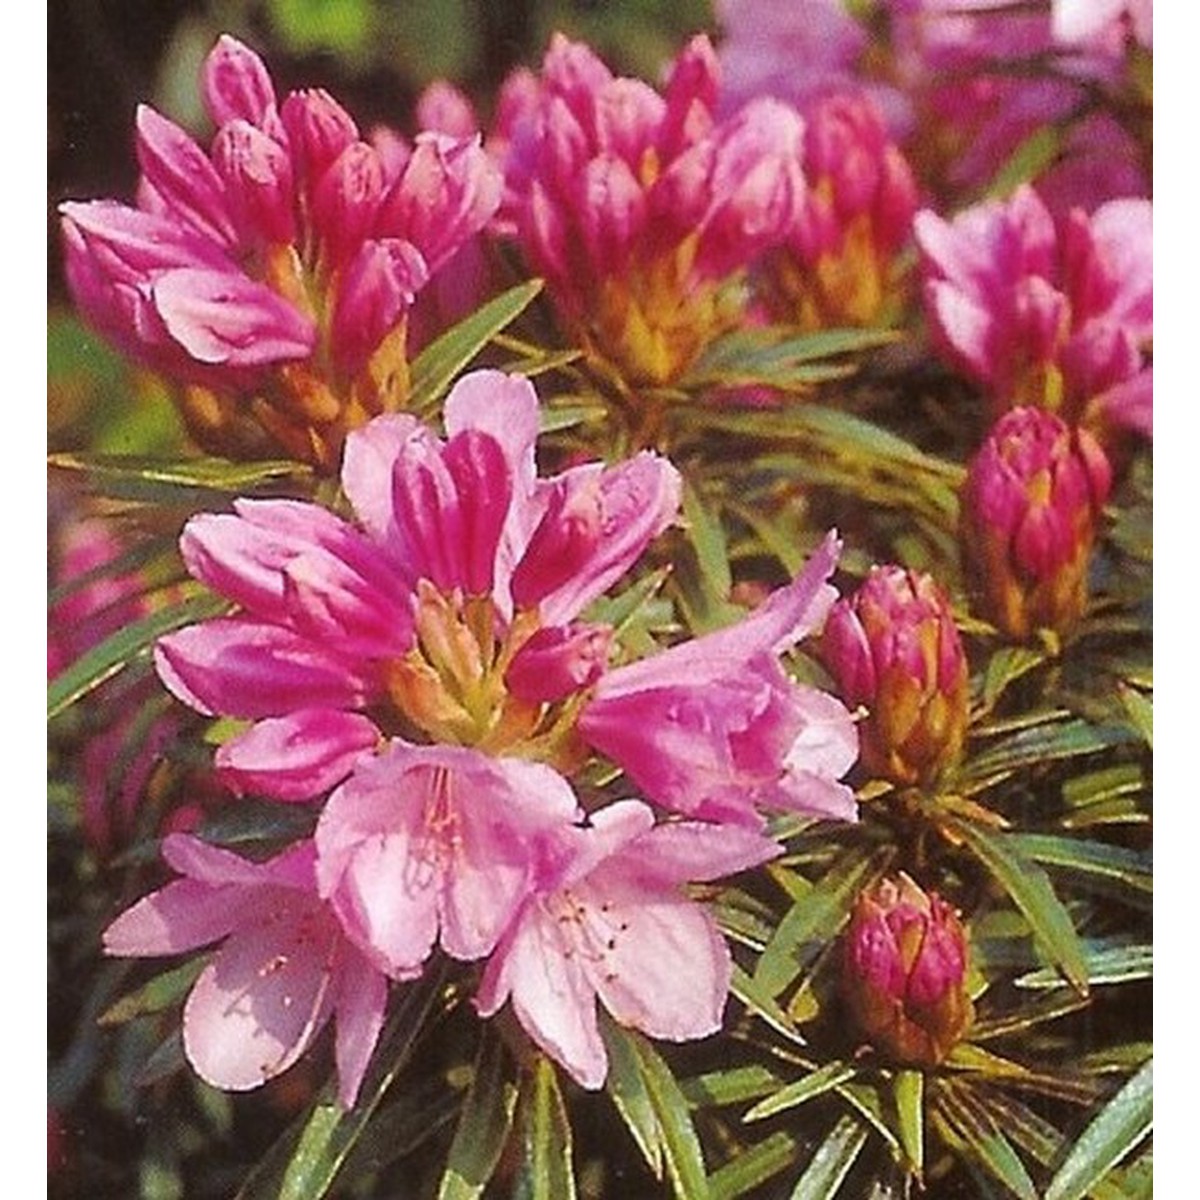   Rhododendron 'Graziella'  100+